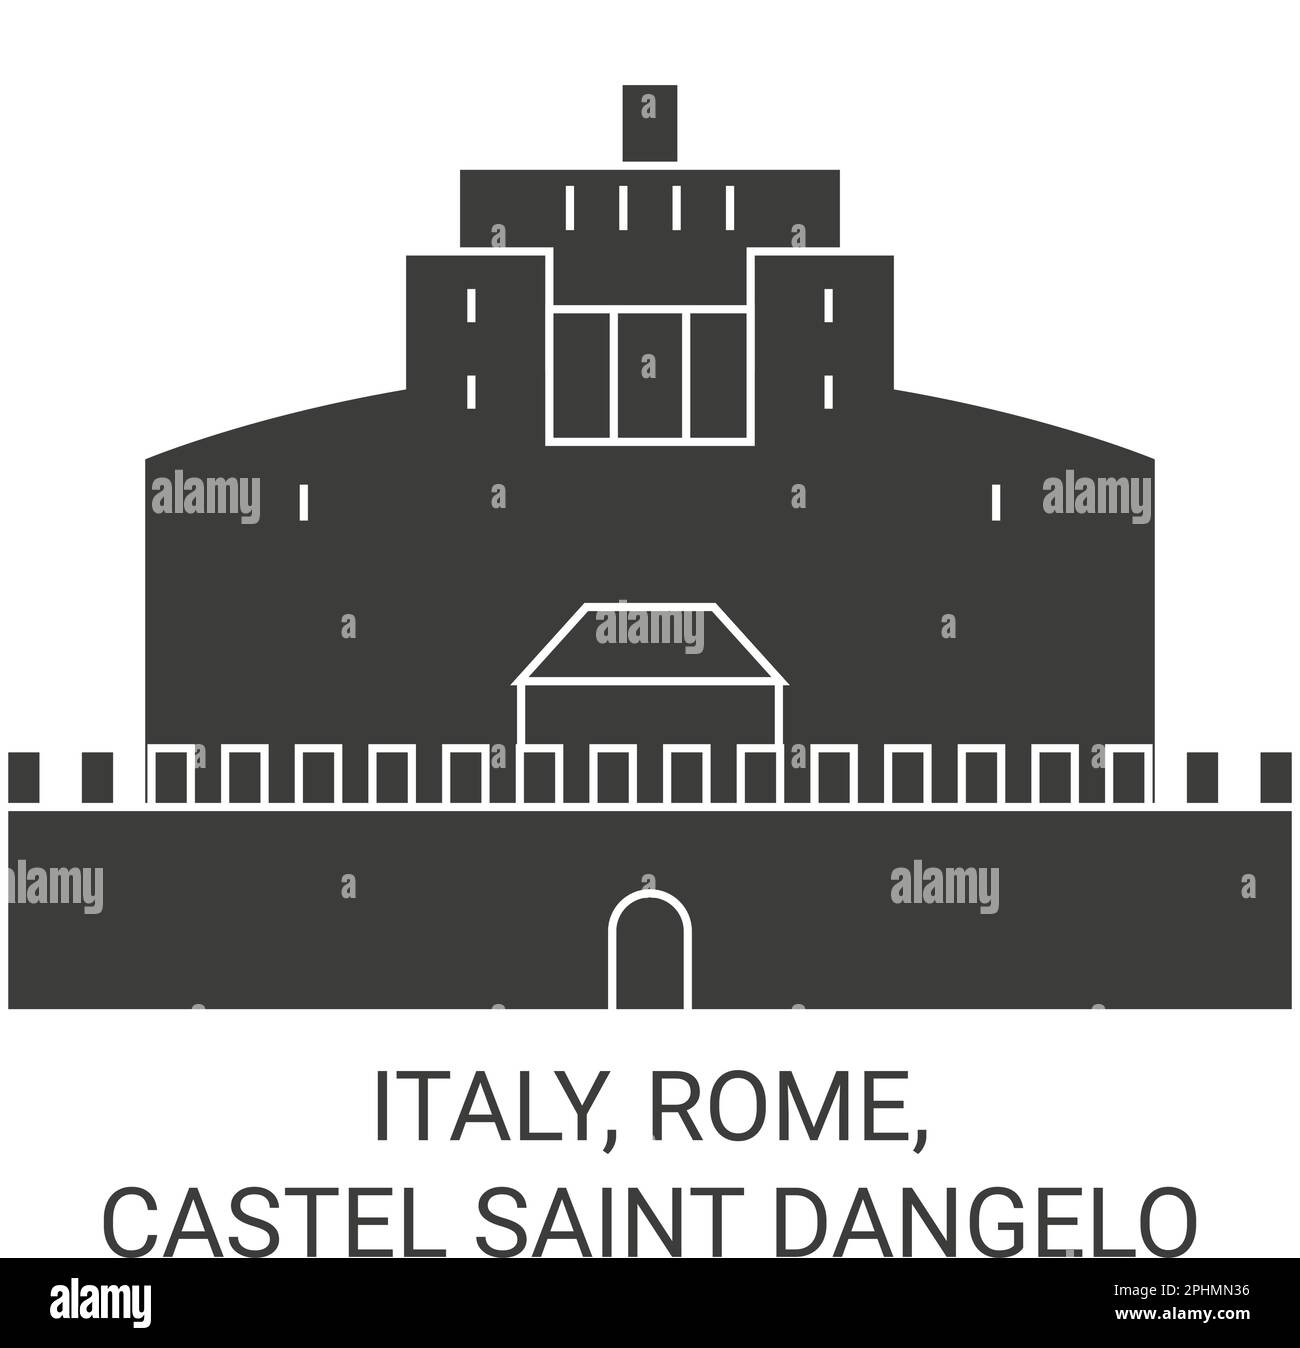 Italy, Rome, Castel Saint Dangelo travel landmark vector illustration Stock Vector